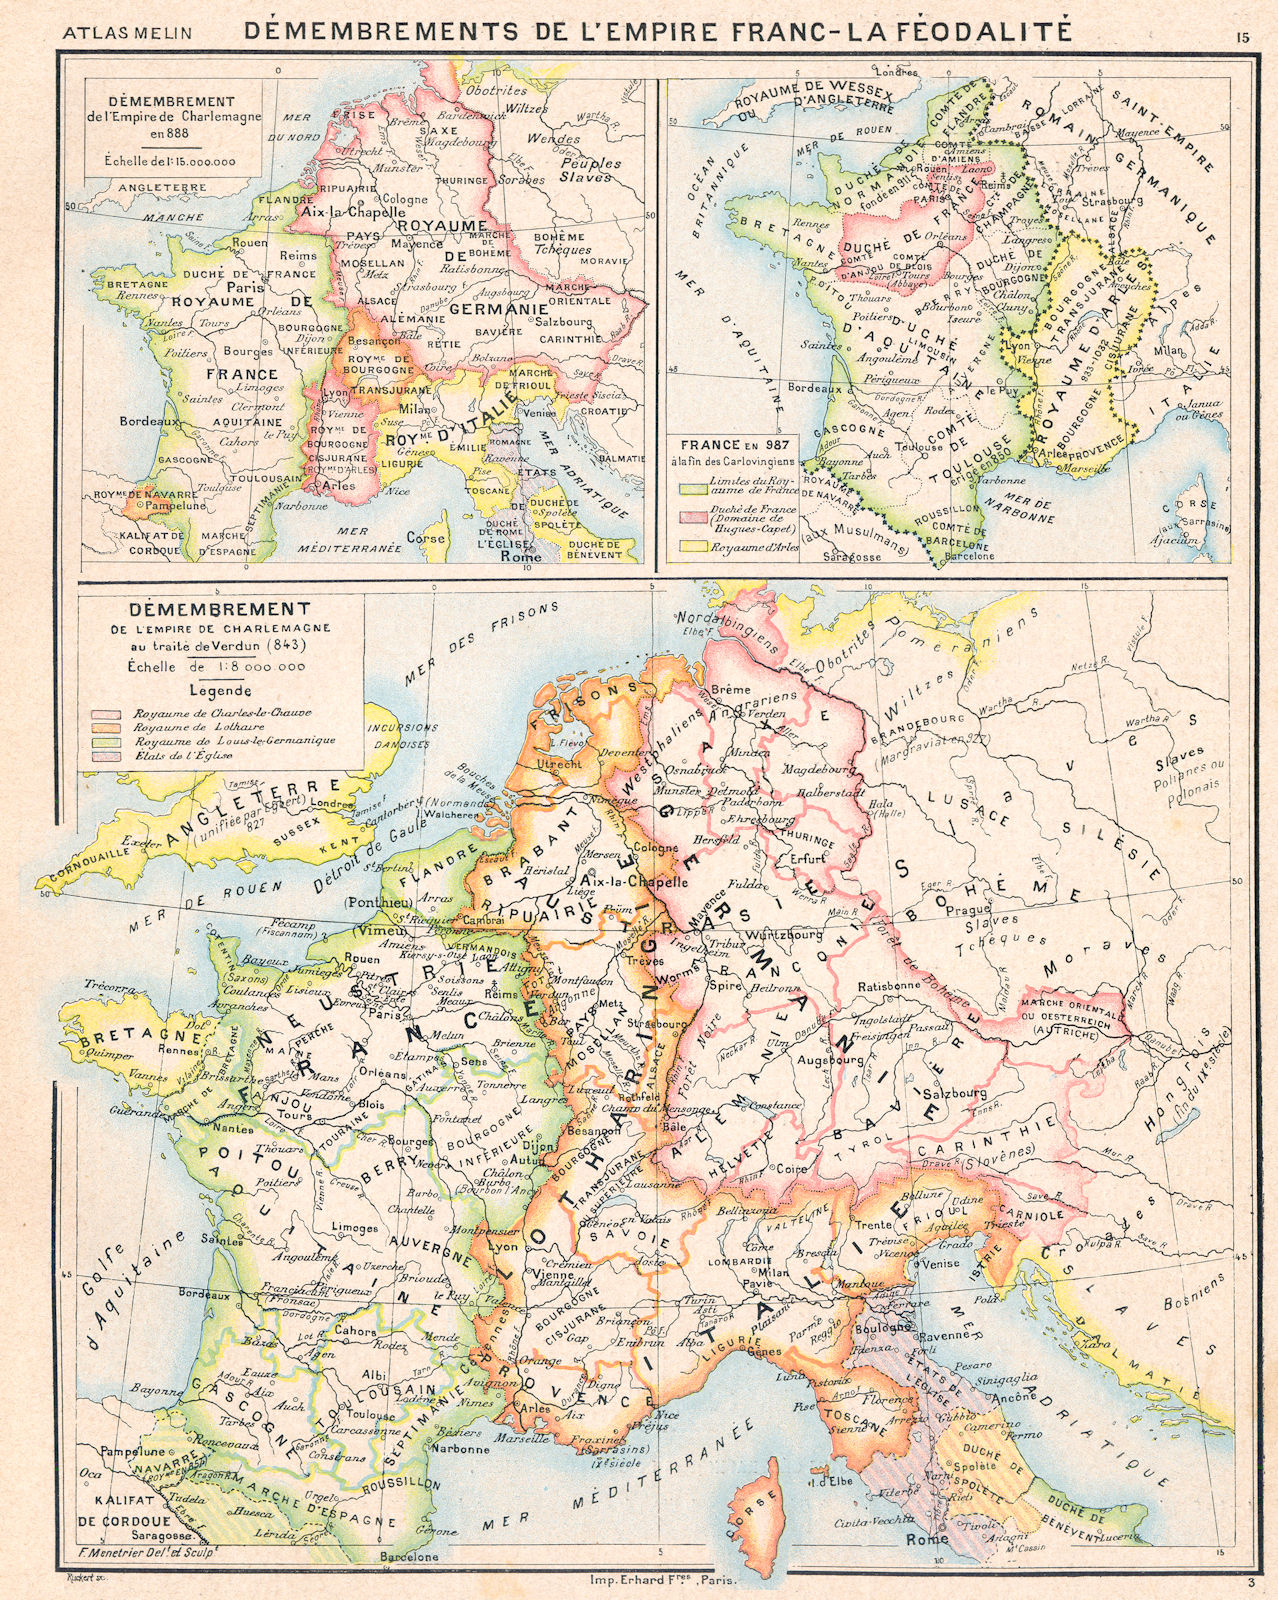 EUROPE. Démembrement de l'empire Charlemagne;Inset France en 888, 987 1900 map